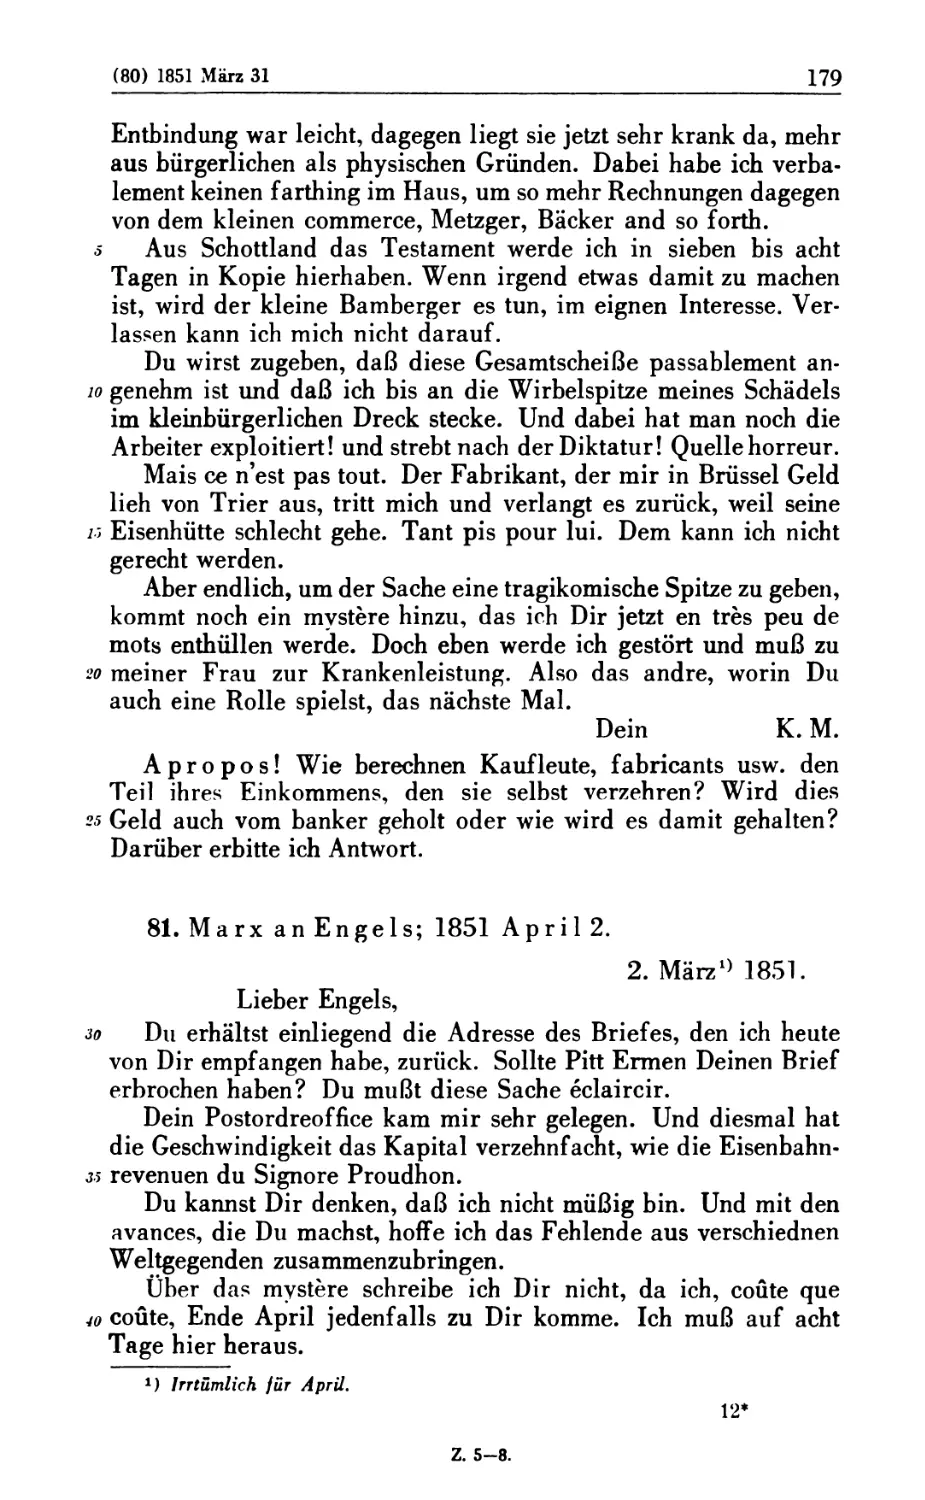 81. Marx an Engels; 1851 April 2